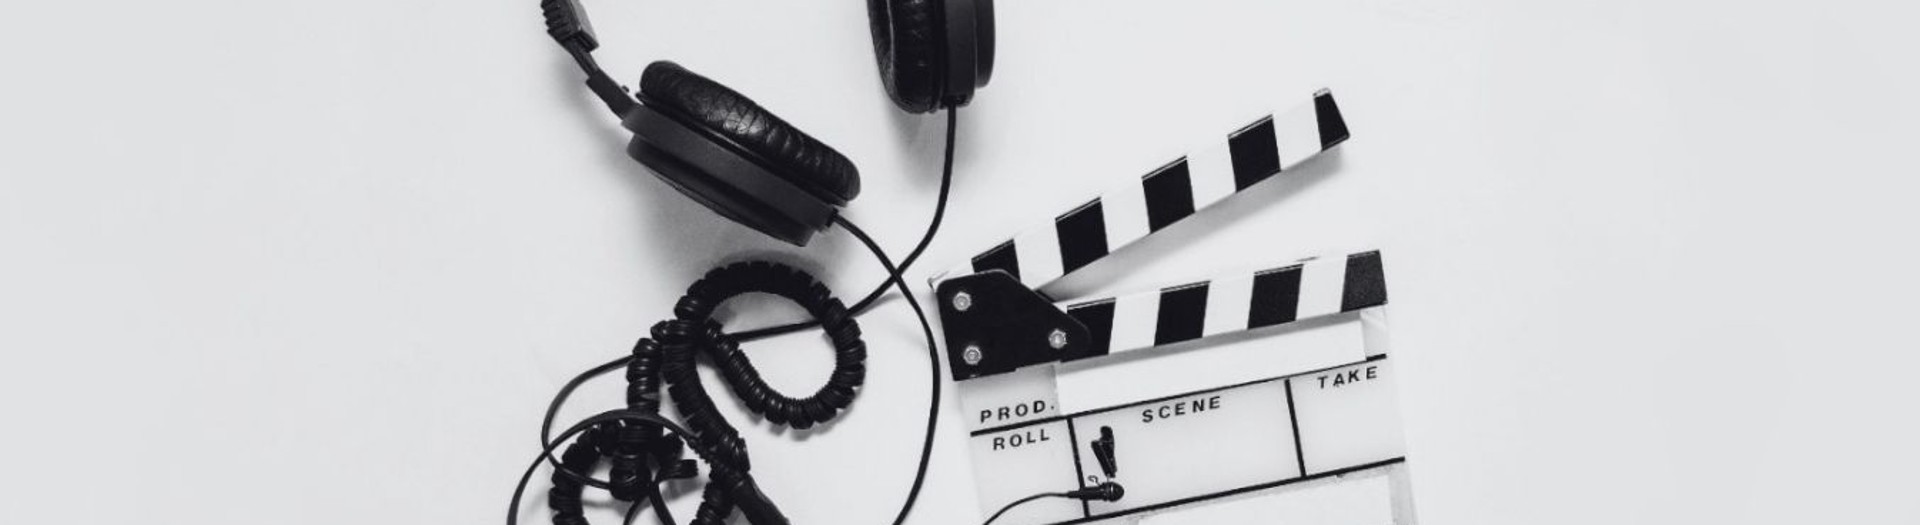 Filmklappe und Kopfhörer vor weißem Hintergrund